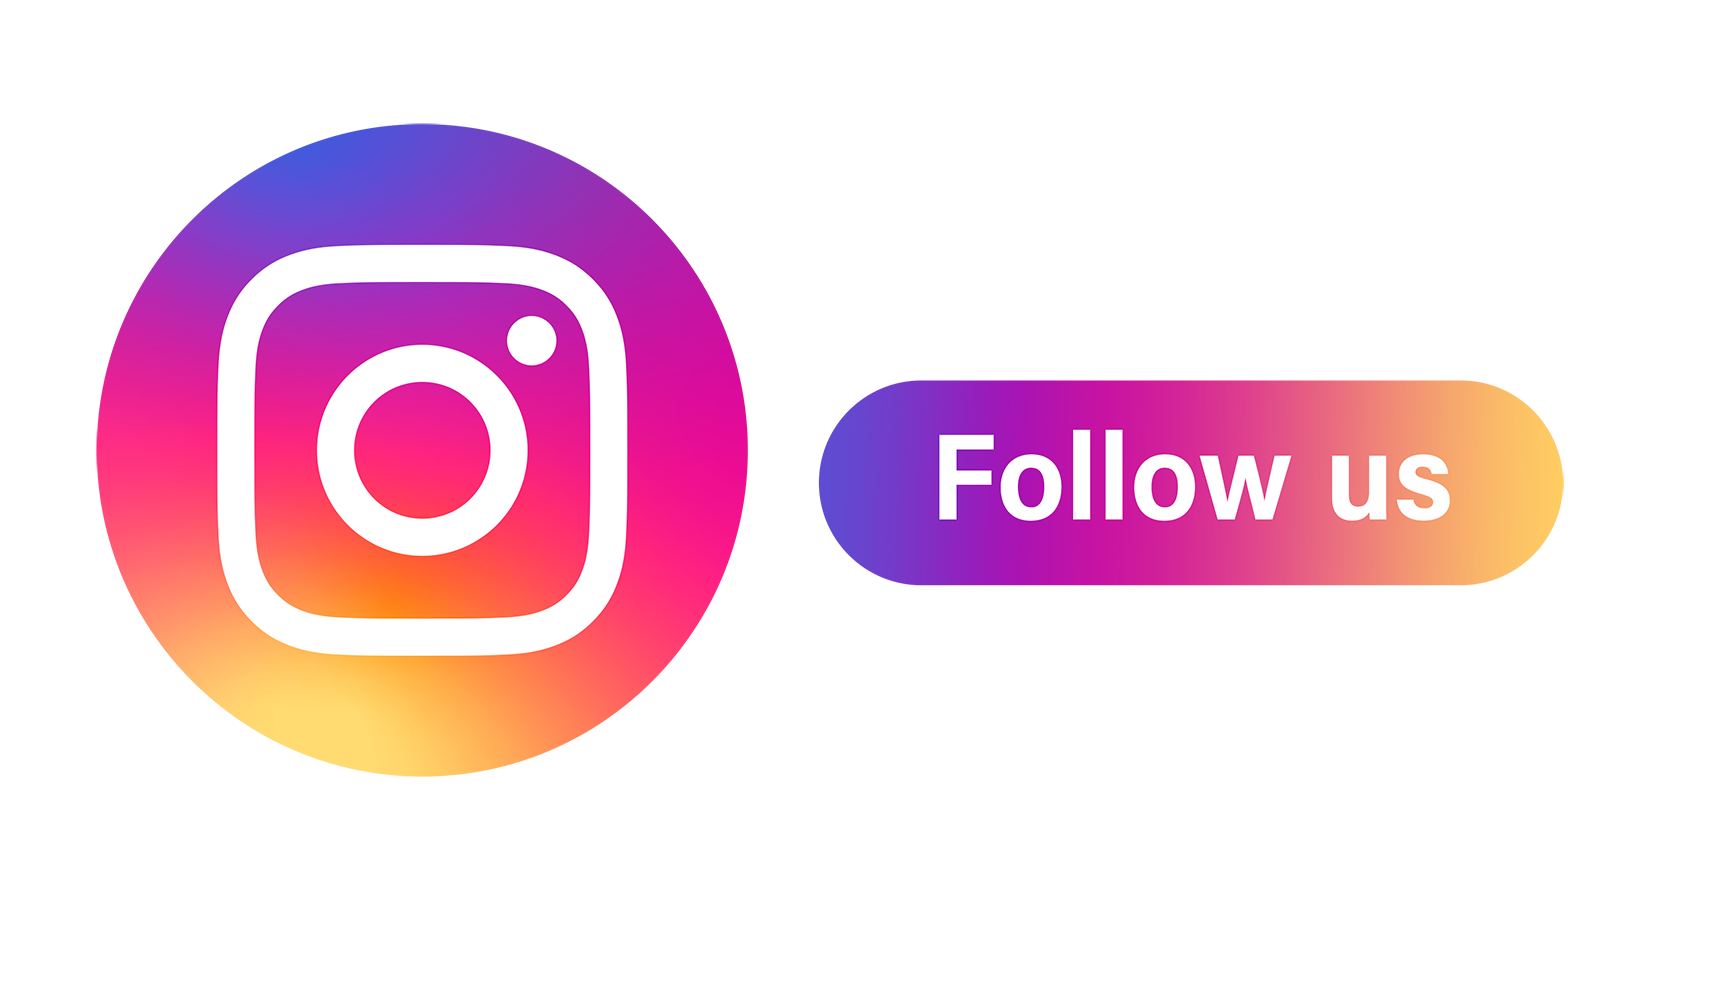 follow us on instagram logo